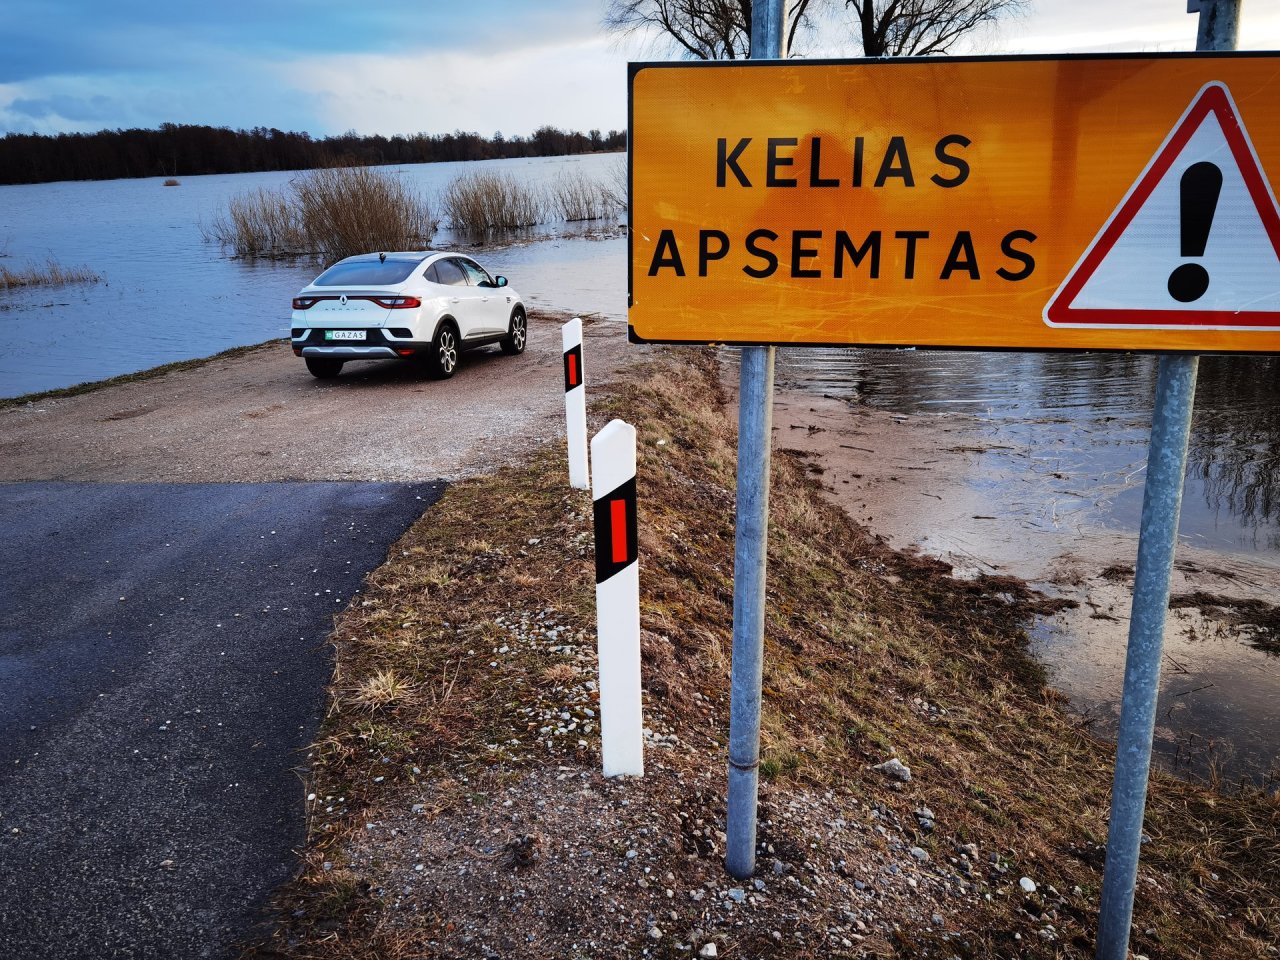 Klaipėdos rajone už 0,5 mln eurų siekiama sumažinti potvynių riziką